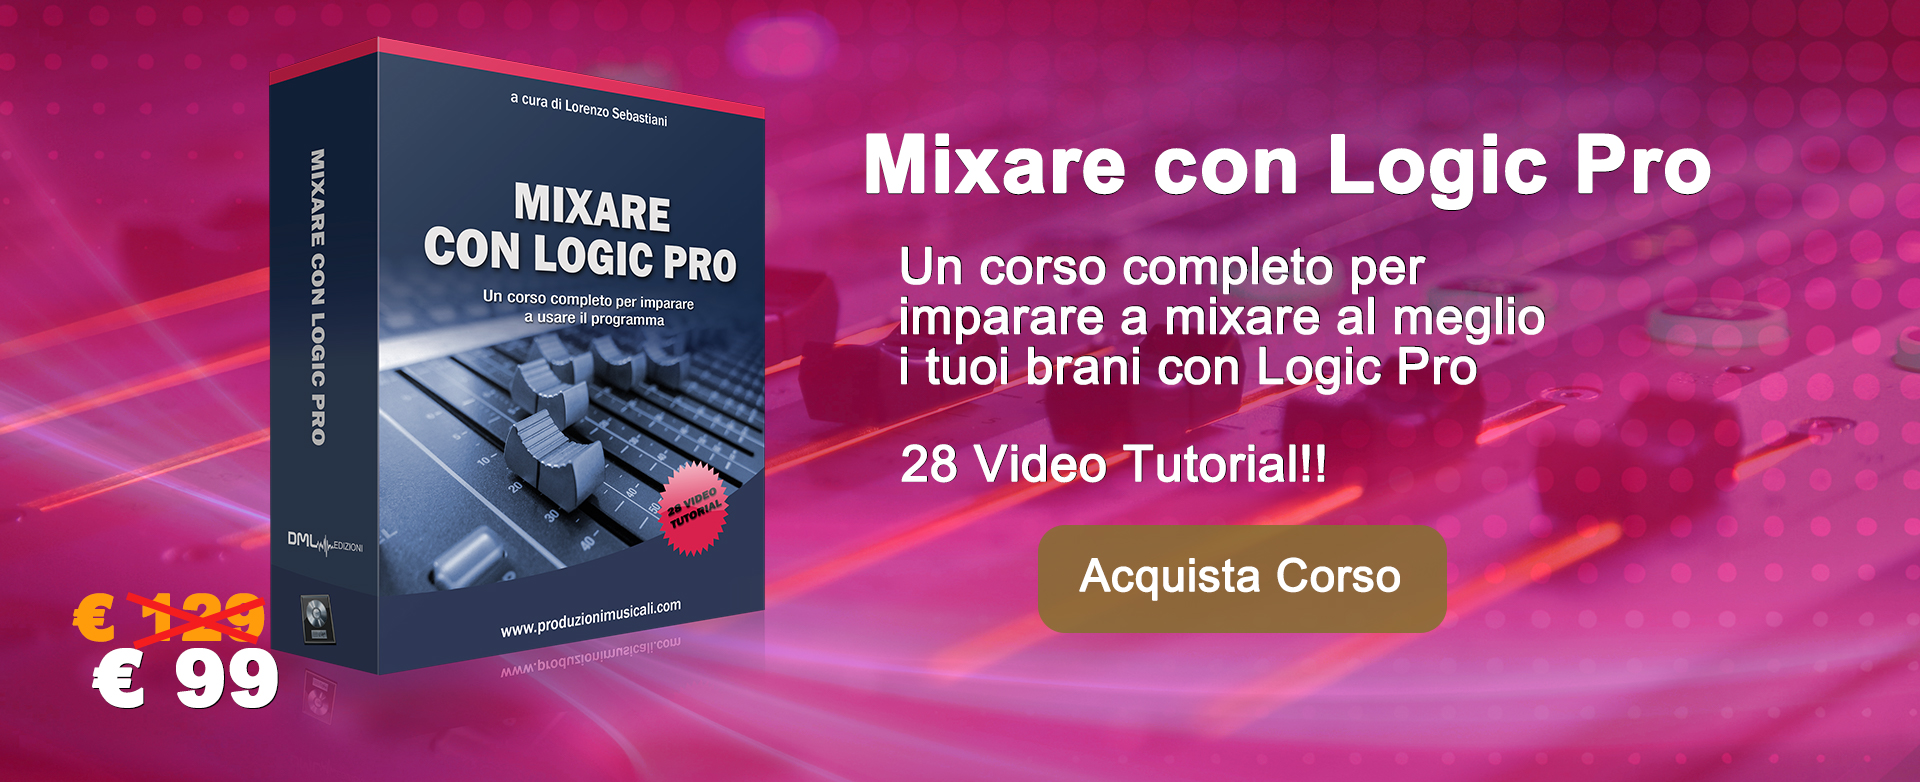 Mixare con Logic Pro